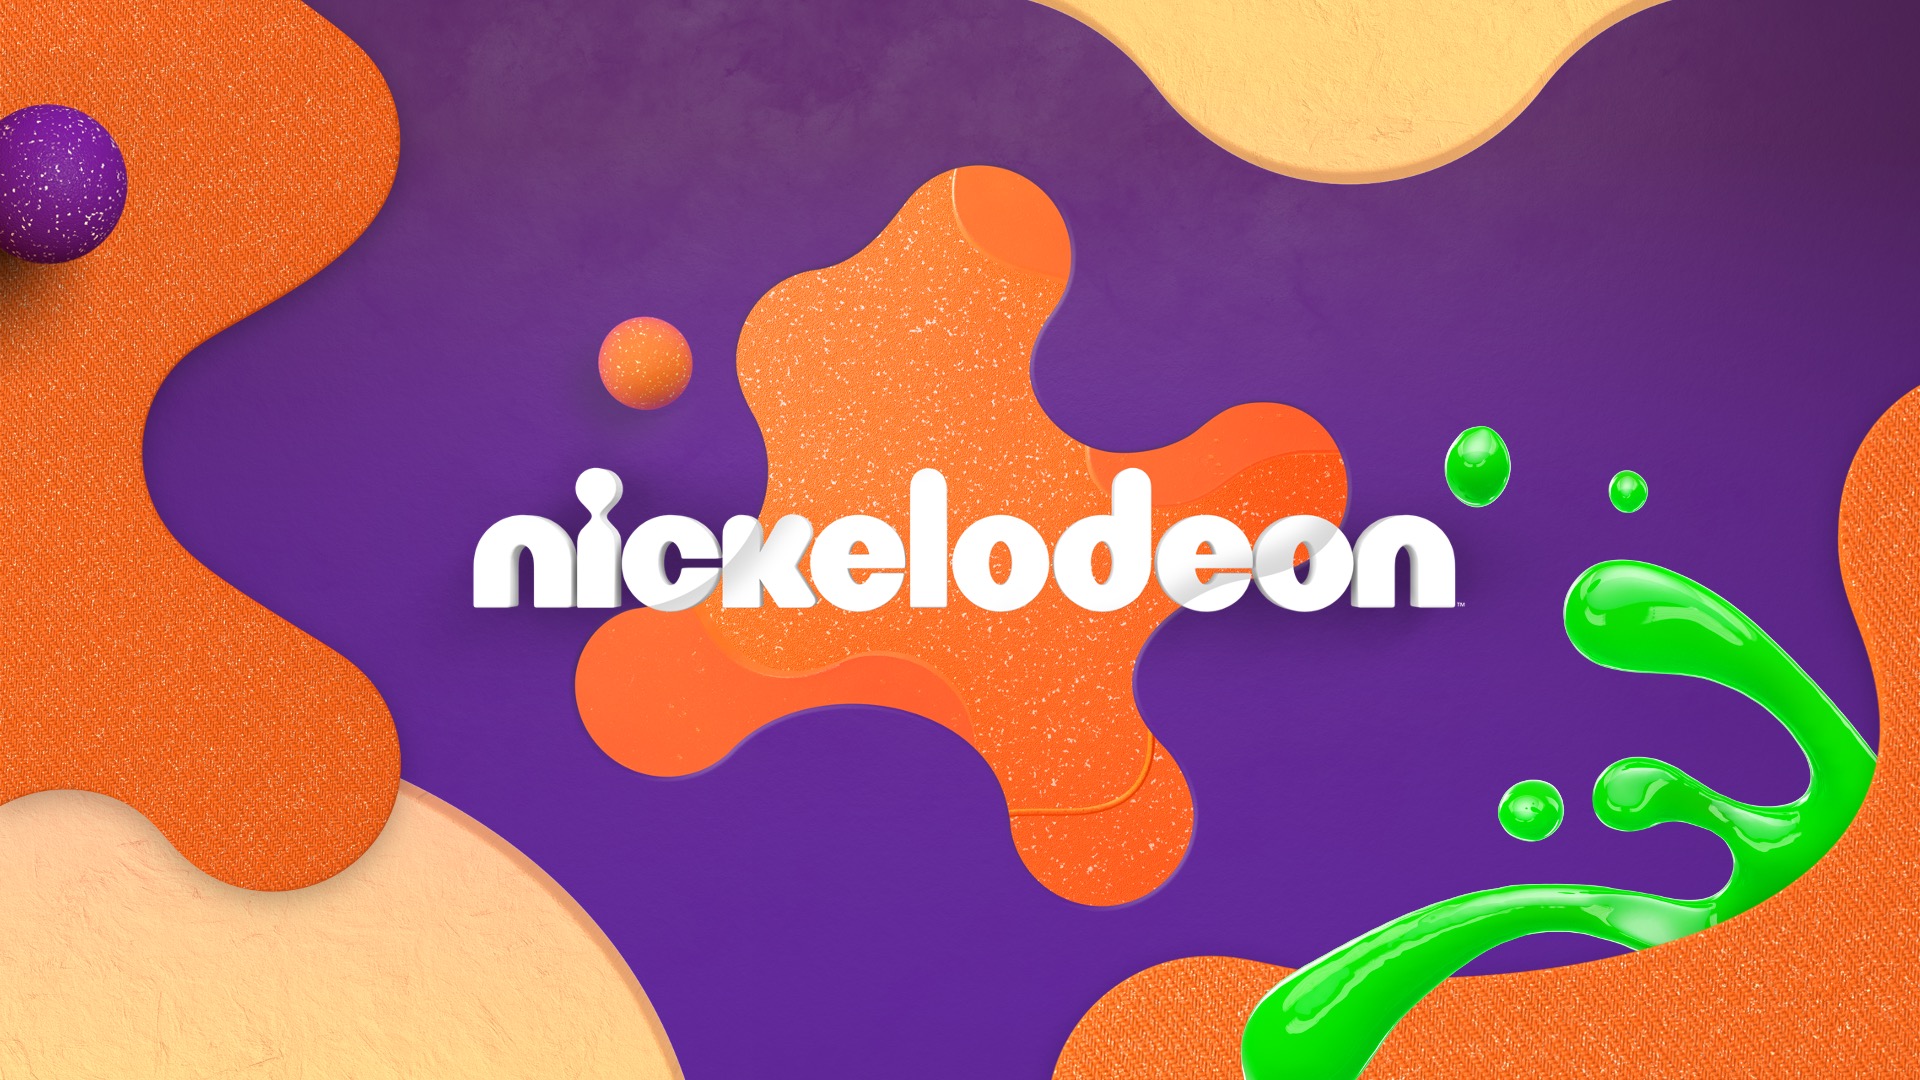 Nickelodeon reformula site e passa a oferecer online conteúdos na